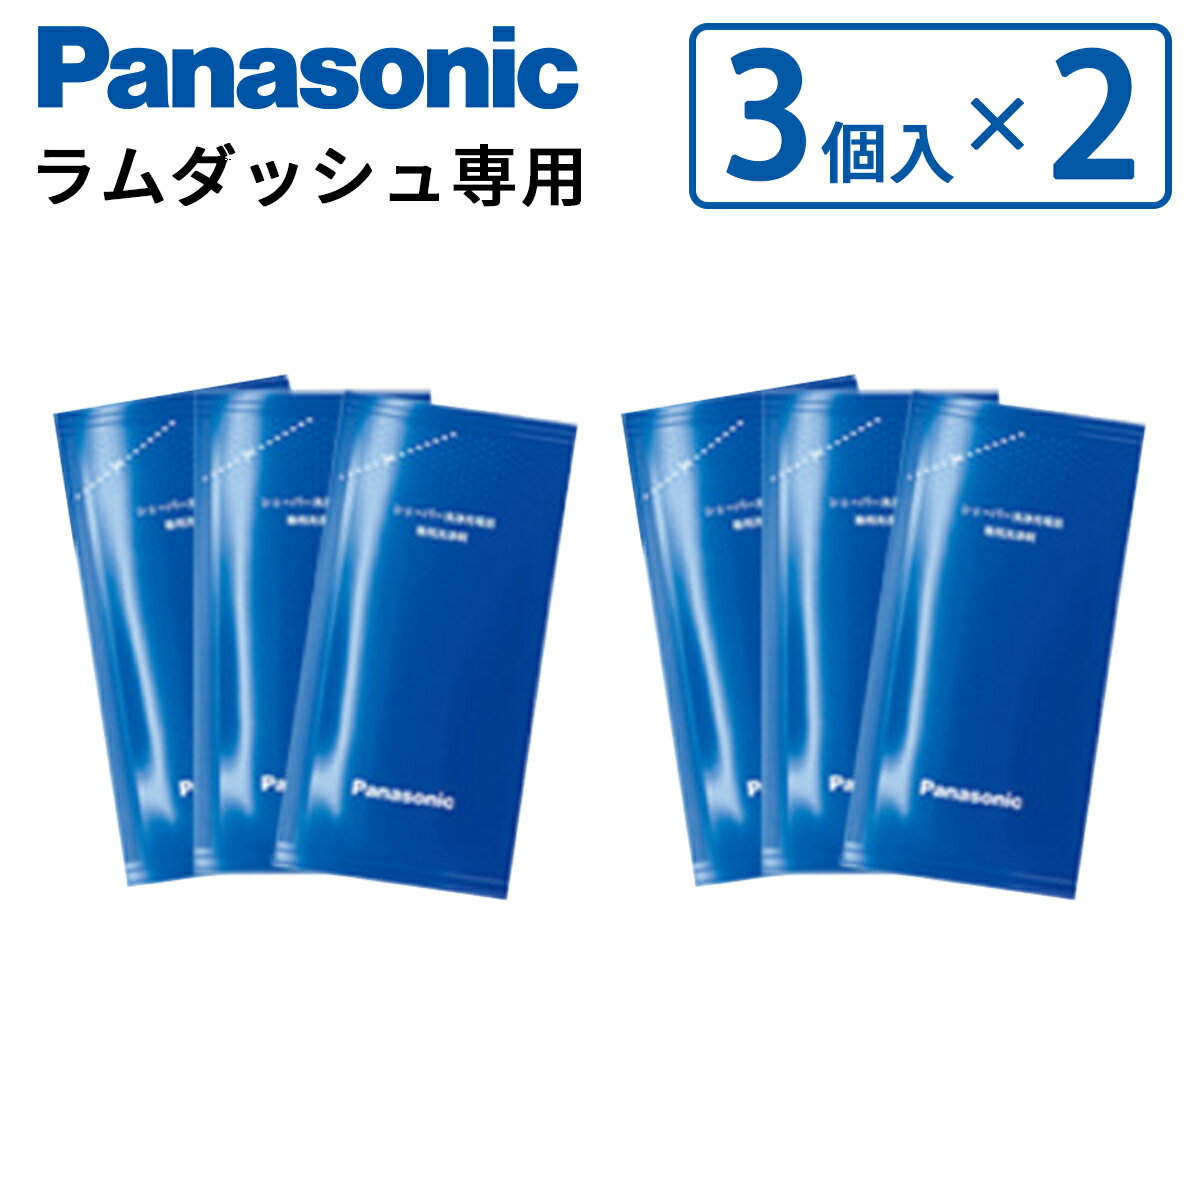 【3個入り×2セット】 Panasonic パナソニック シェーバー洗浄充電器 専用洗浄剤 ES-4L03 【セット商品】